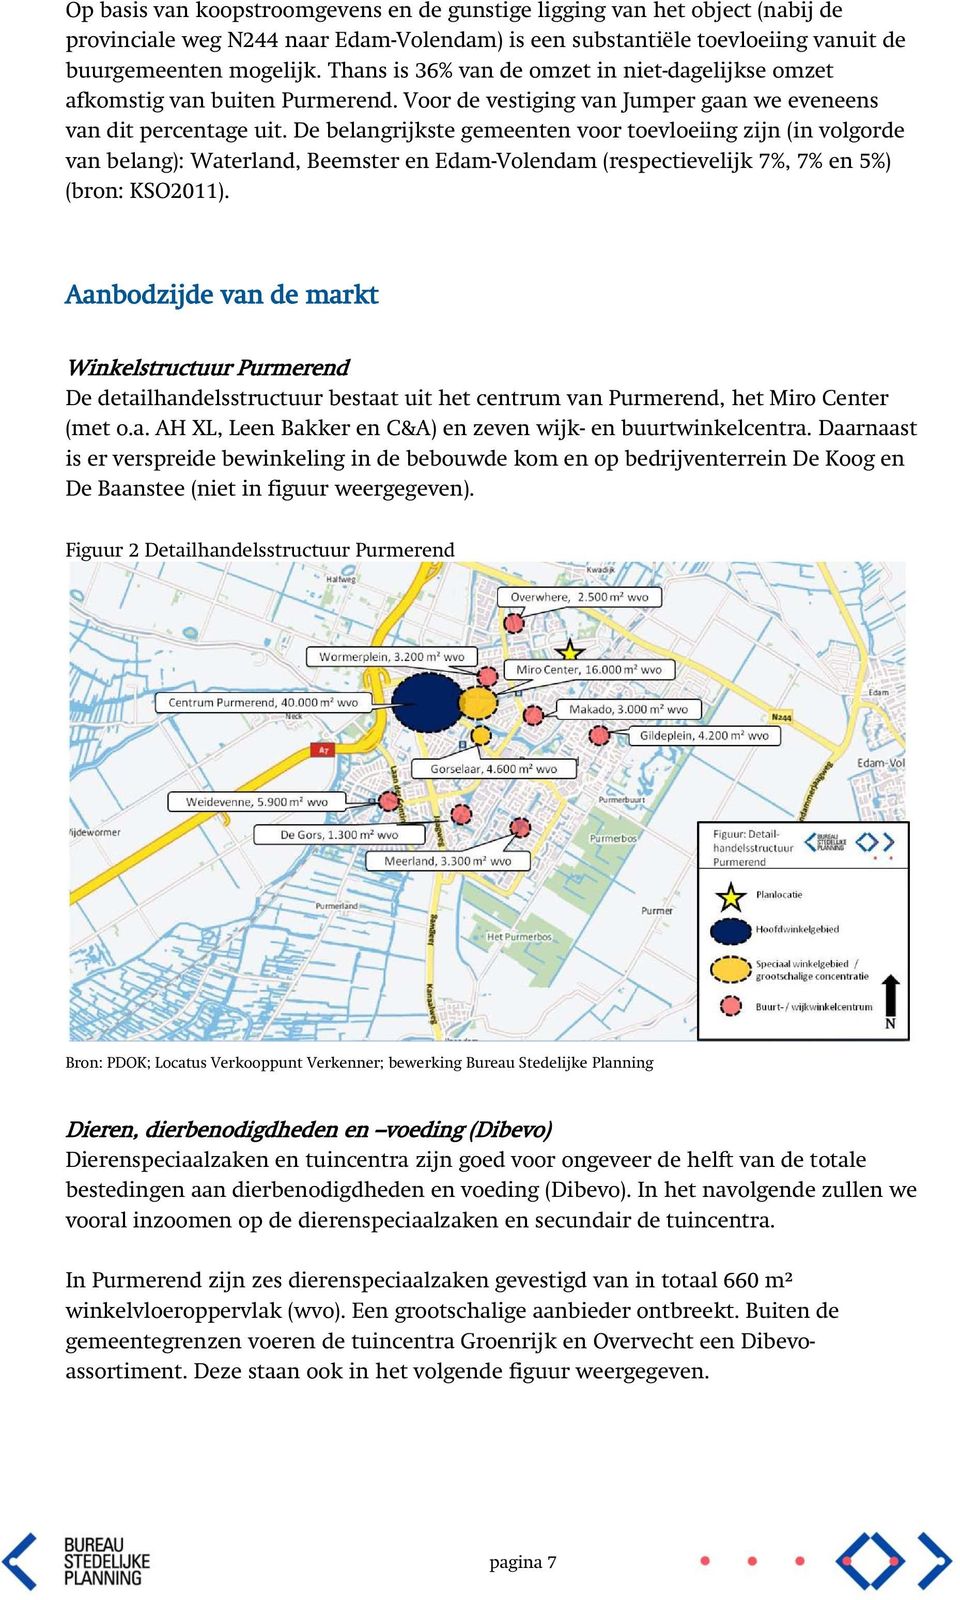 De belangrijkste gemeenten voor toevloeiing zijn (in volgorde van belang): Waterland, Beemster en Edam-Volendam (respectievelijk 7%, 7% en 5%) (bron: KSO2011).